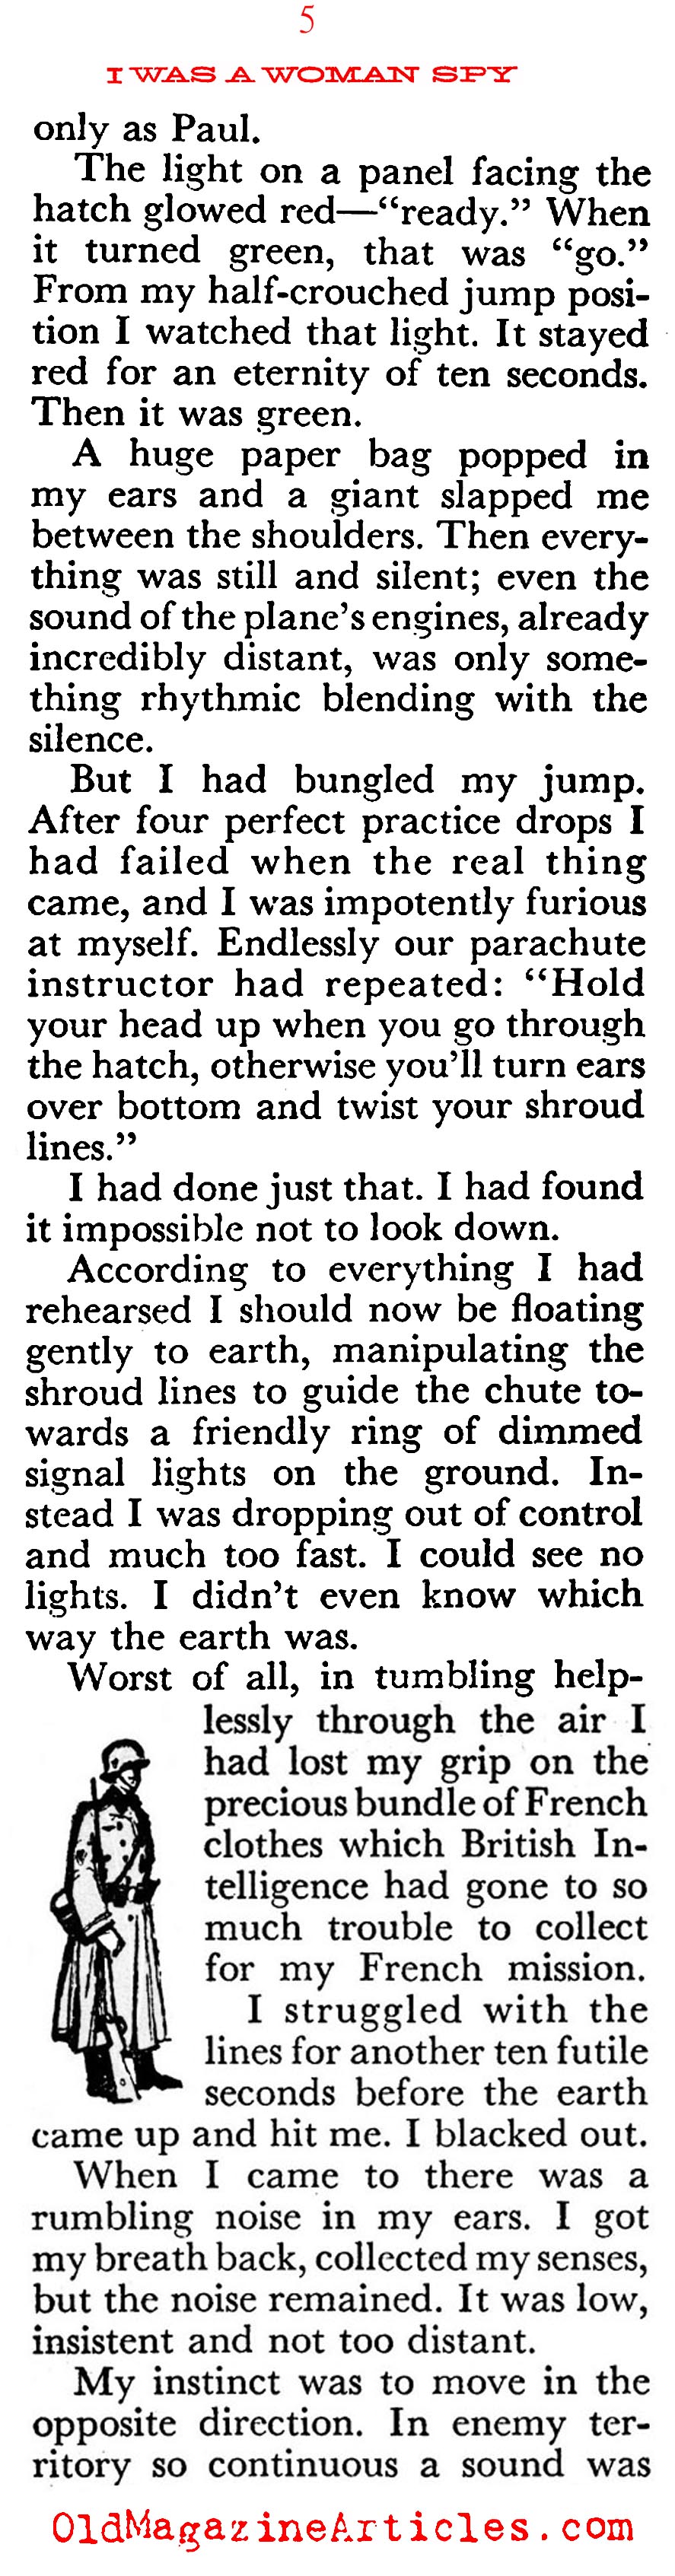 The Lady was a Spy  (Coronet Magazine, 1954)